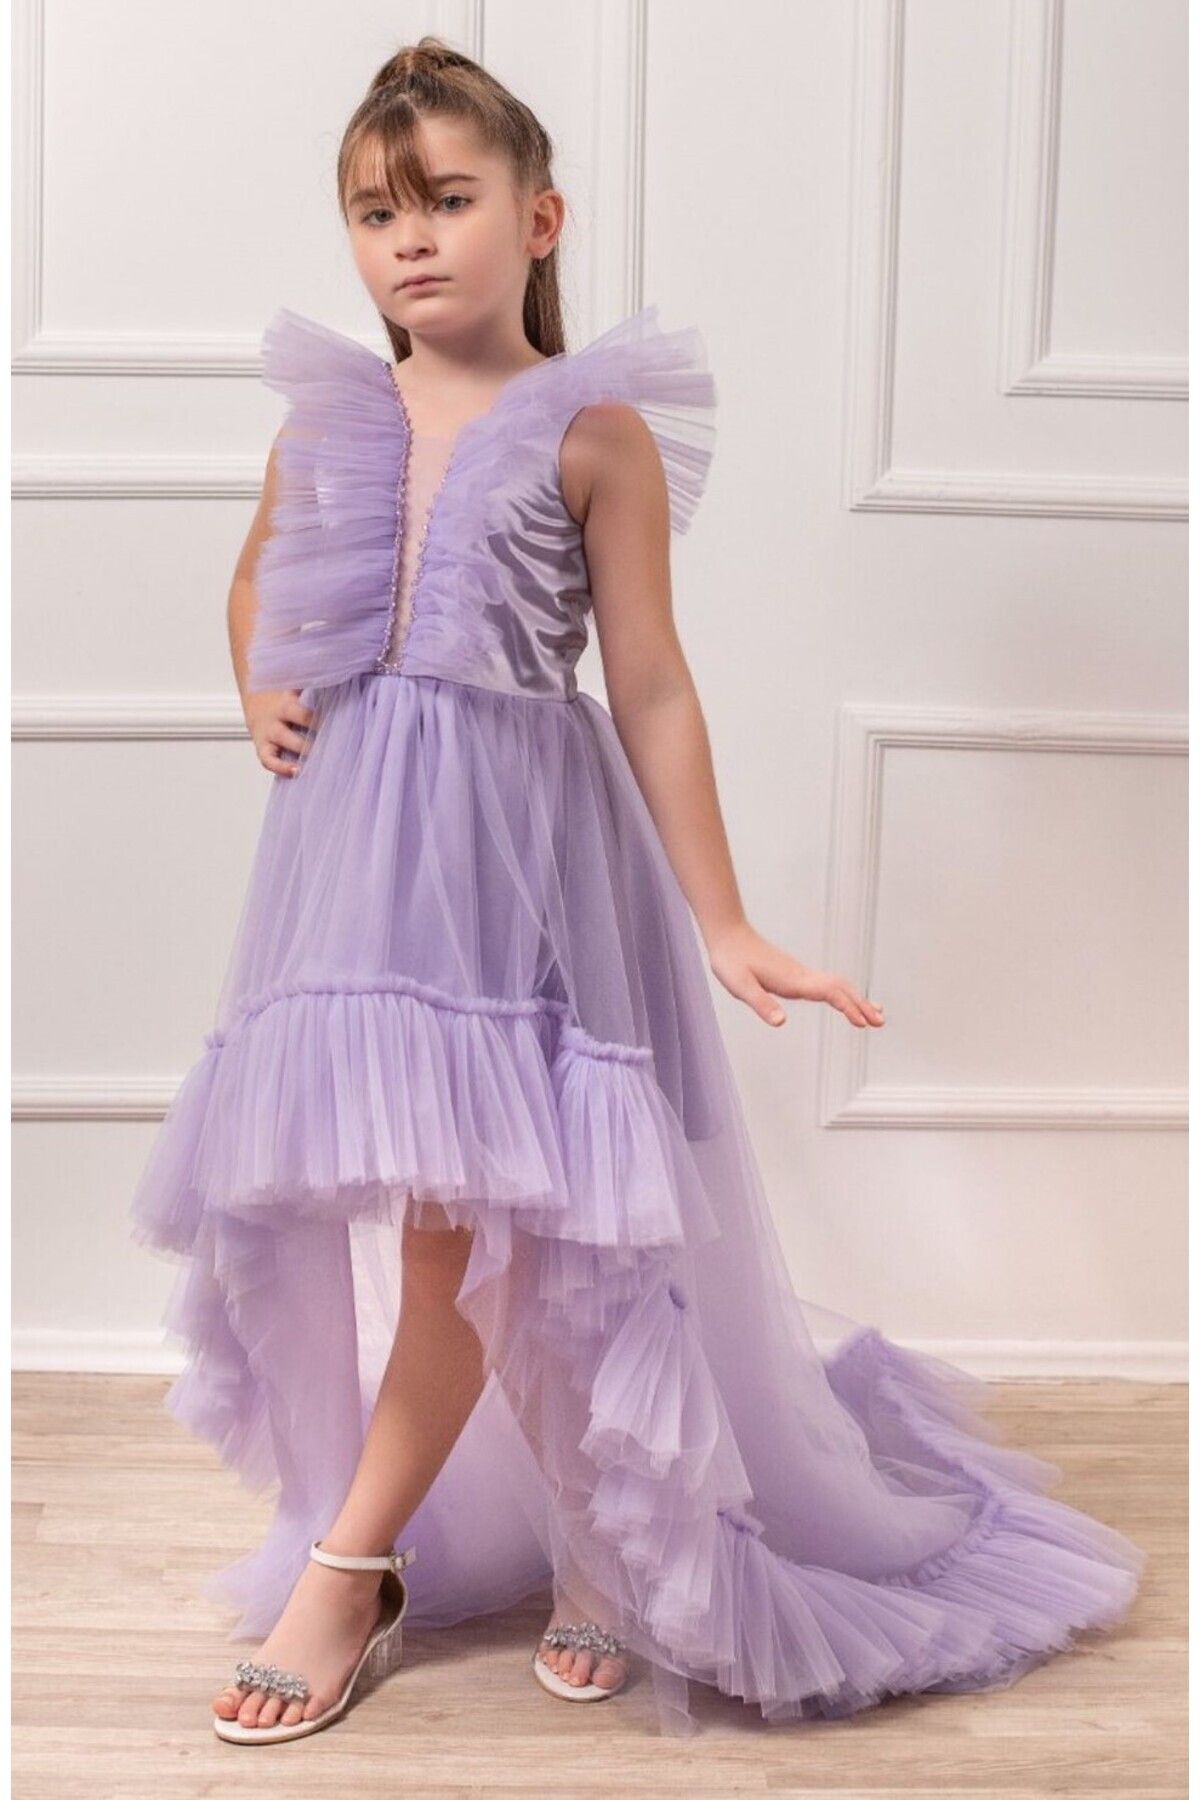 nossiby Kelebek Yaka Kız Çocuk Elbisesi, Prenses Kız Çocuk Abiye Elbisesi